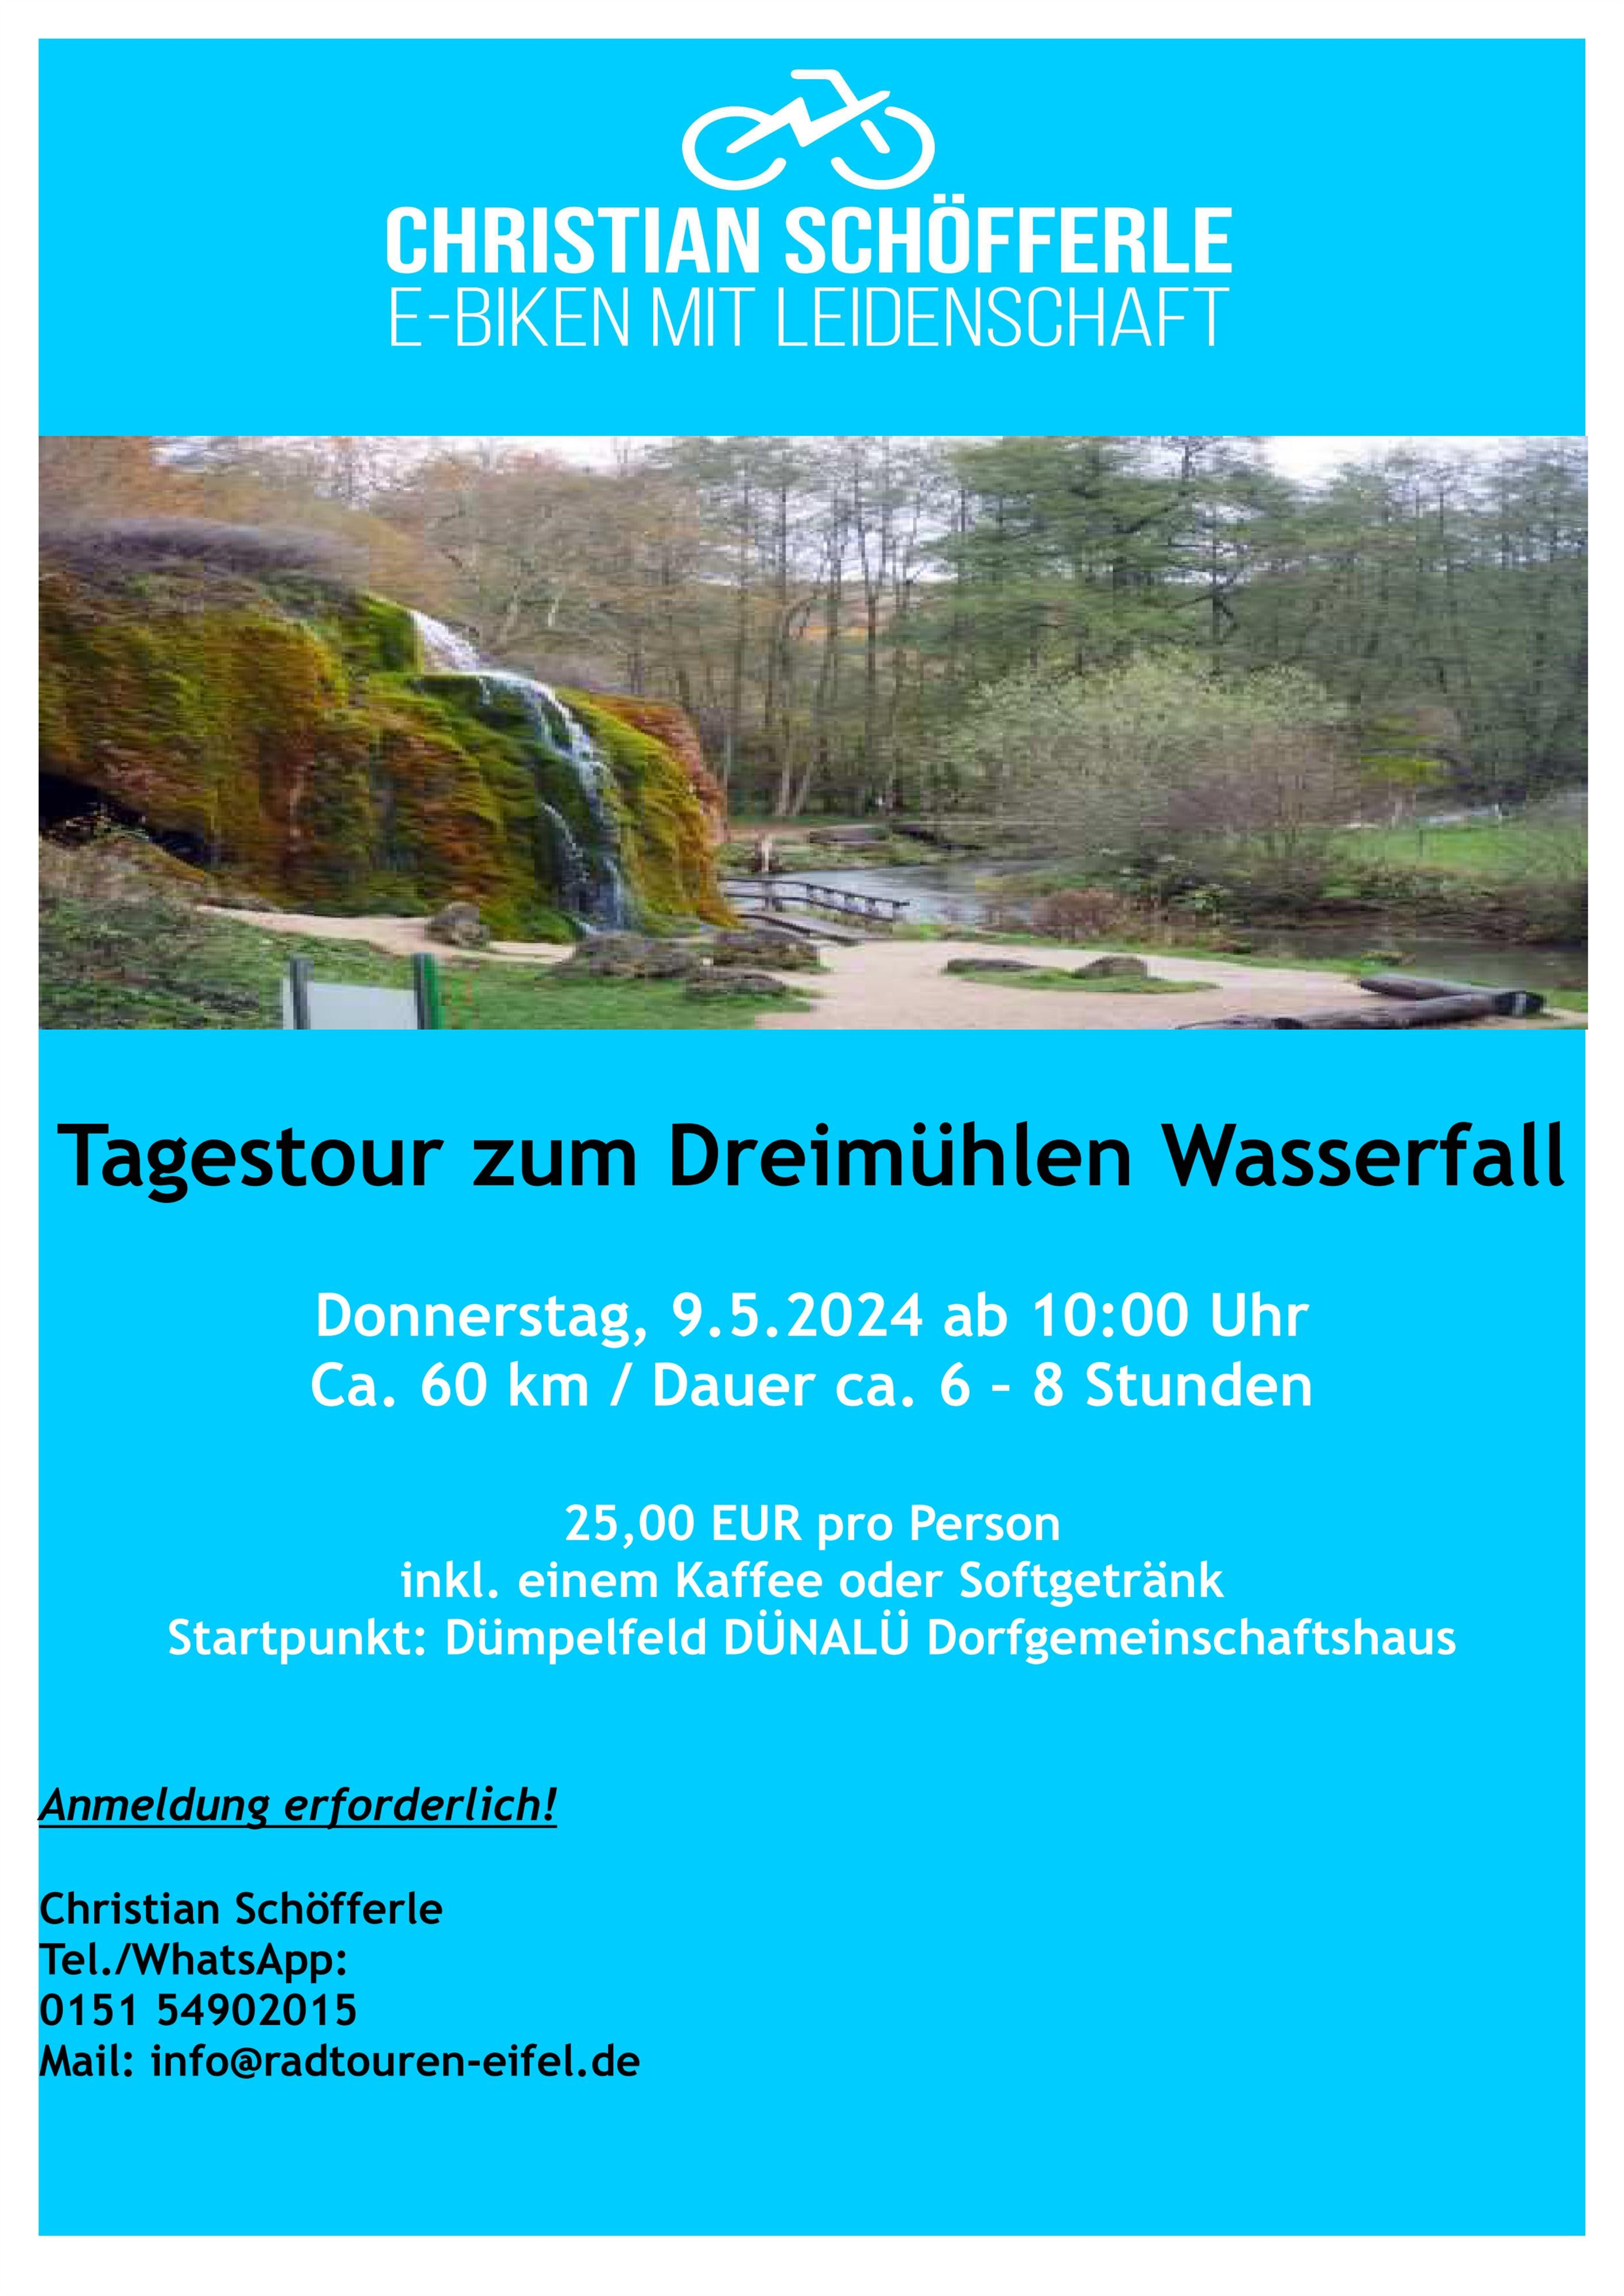 Plakat Tagestour zum Dreimühlen Wasserfall, @ Radtouren Eifel|Christian Schöfferle